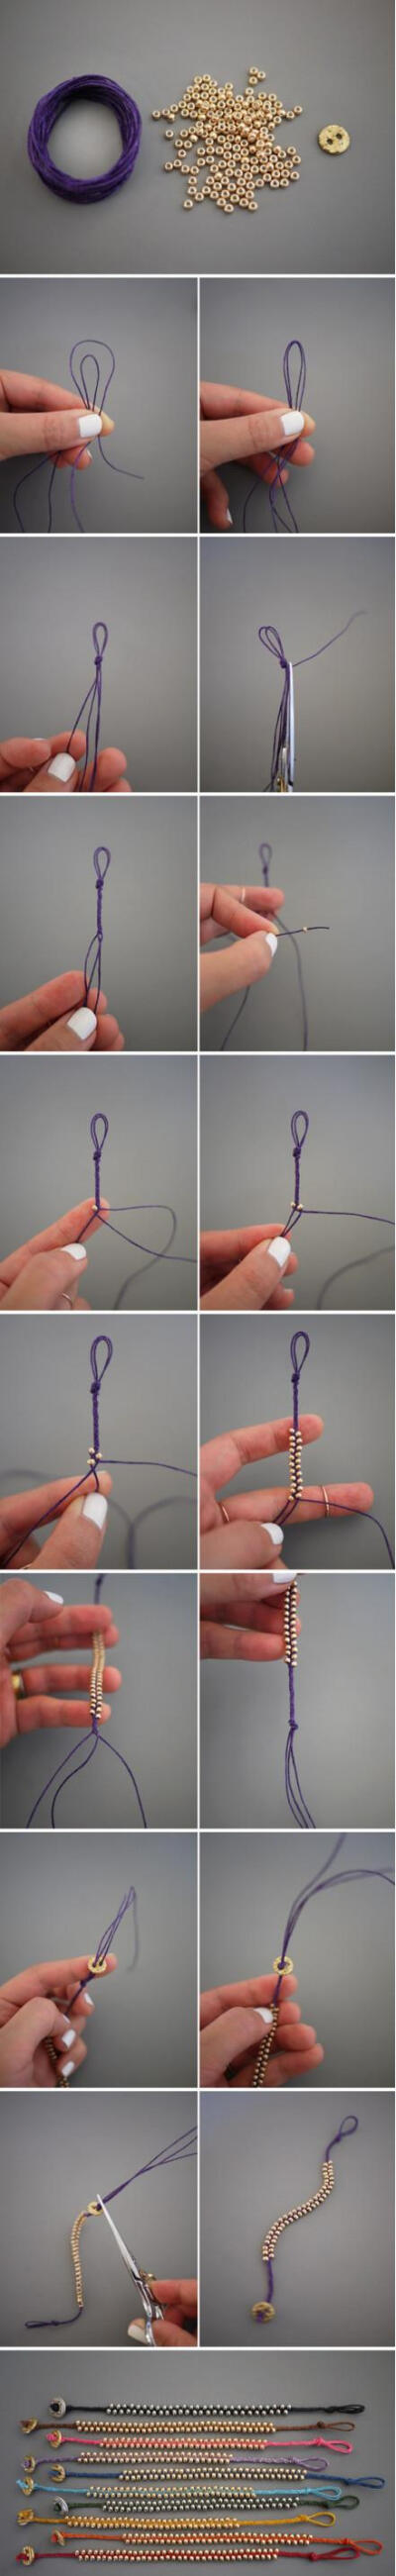 自己编手绳什么的我最喜欢了。这个不难哦。很好看。【阿团丸子】